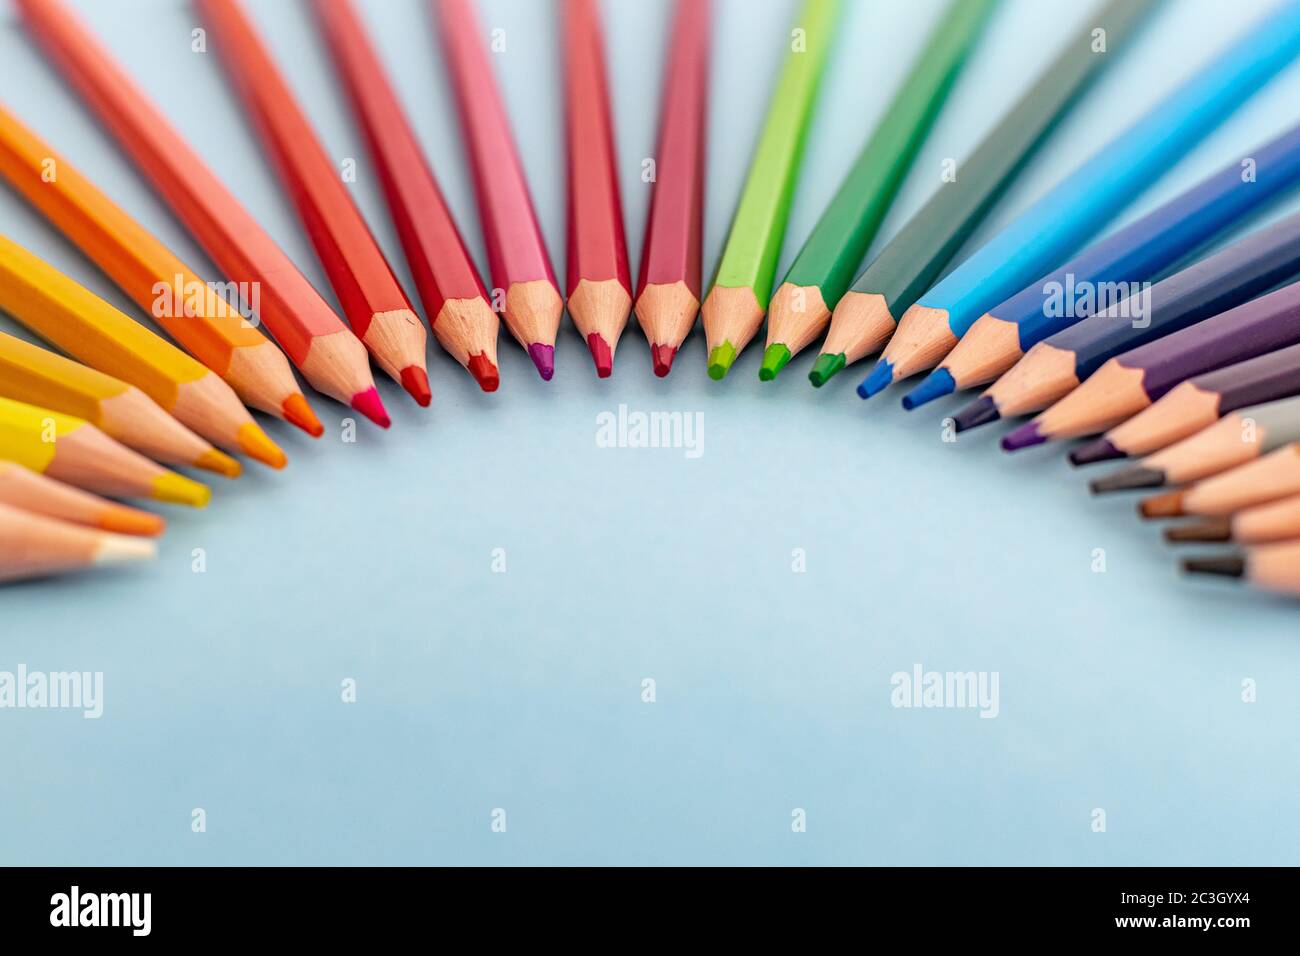 10 matite con colori arcobaleno - nere